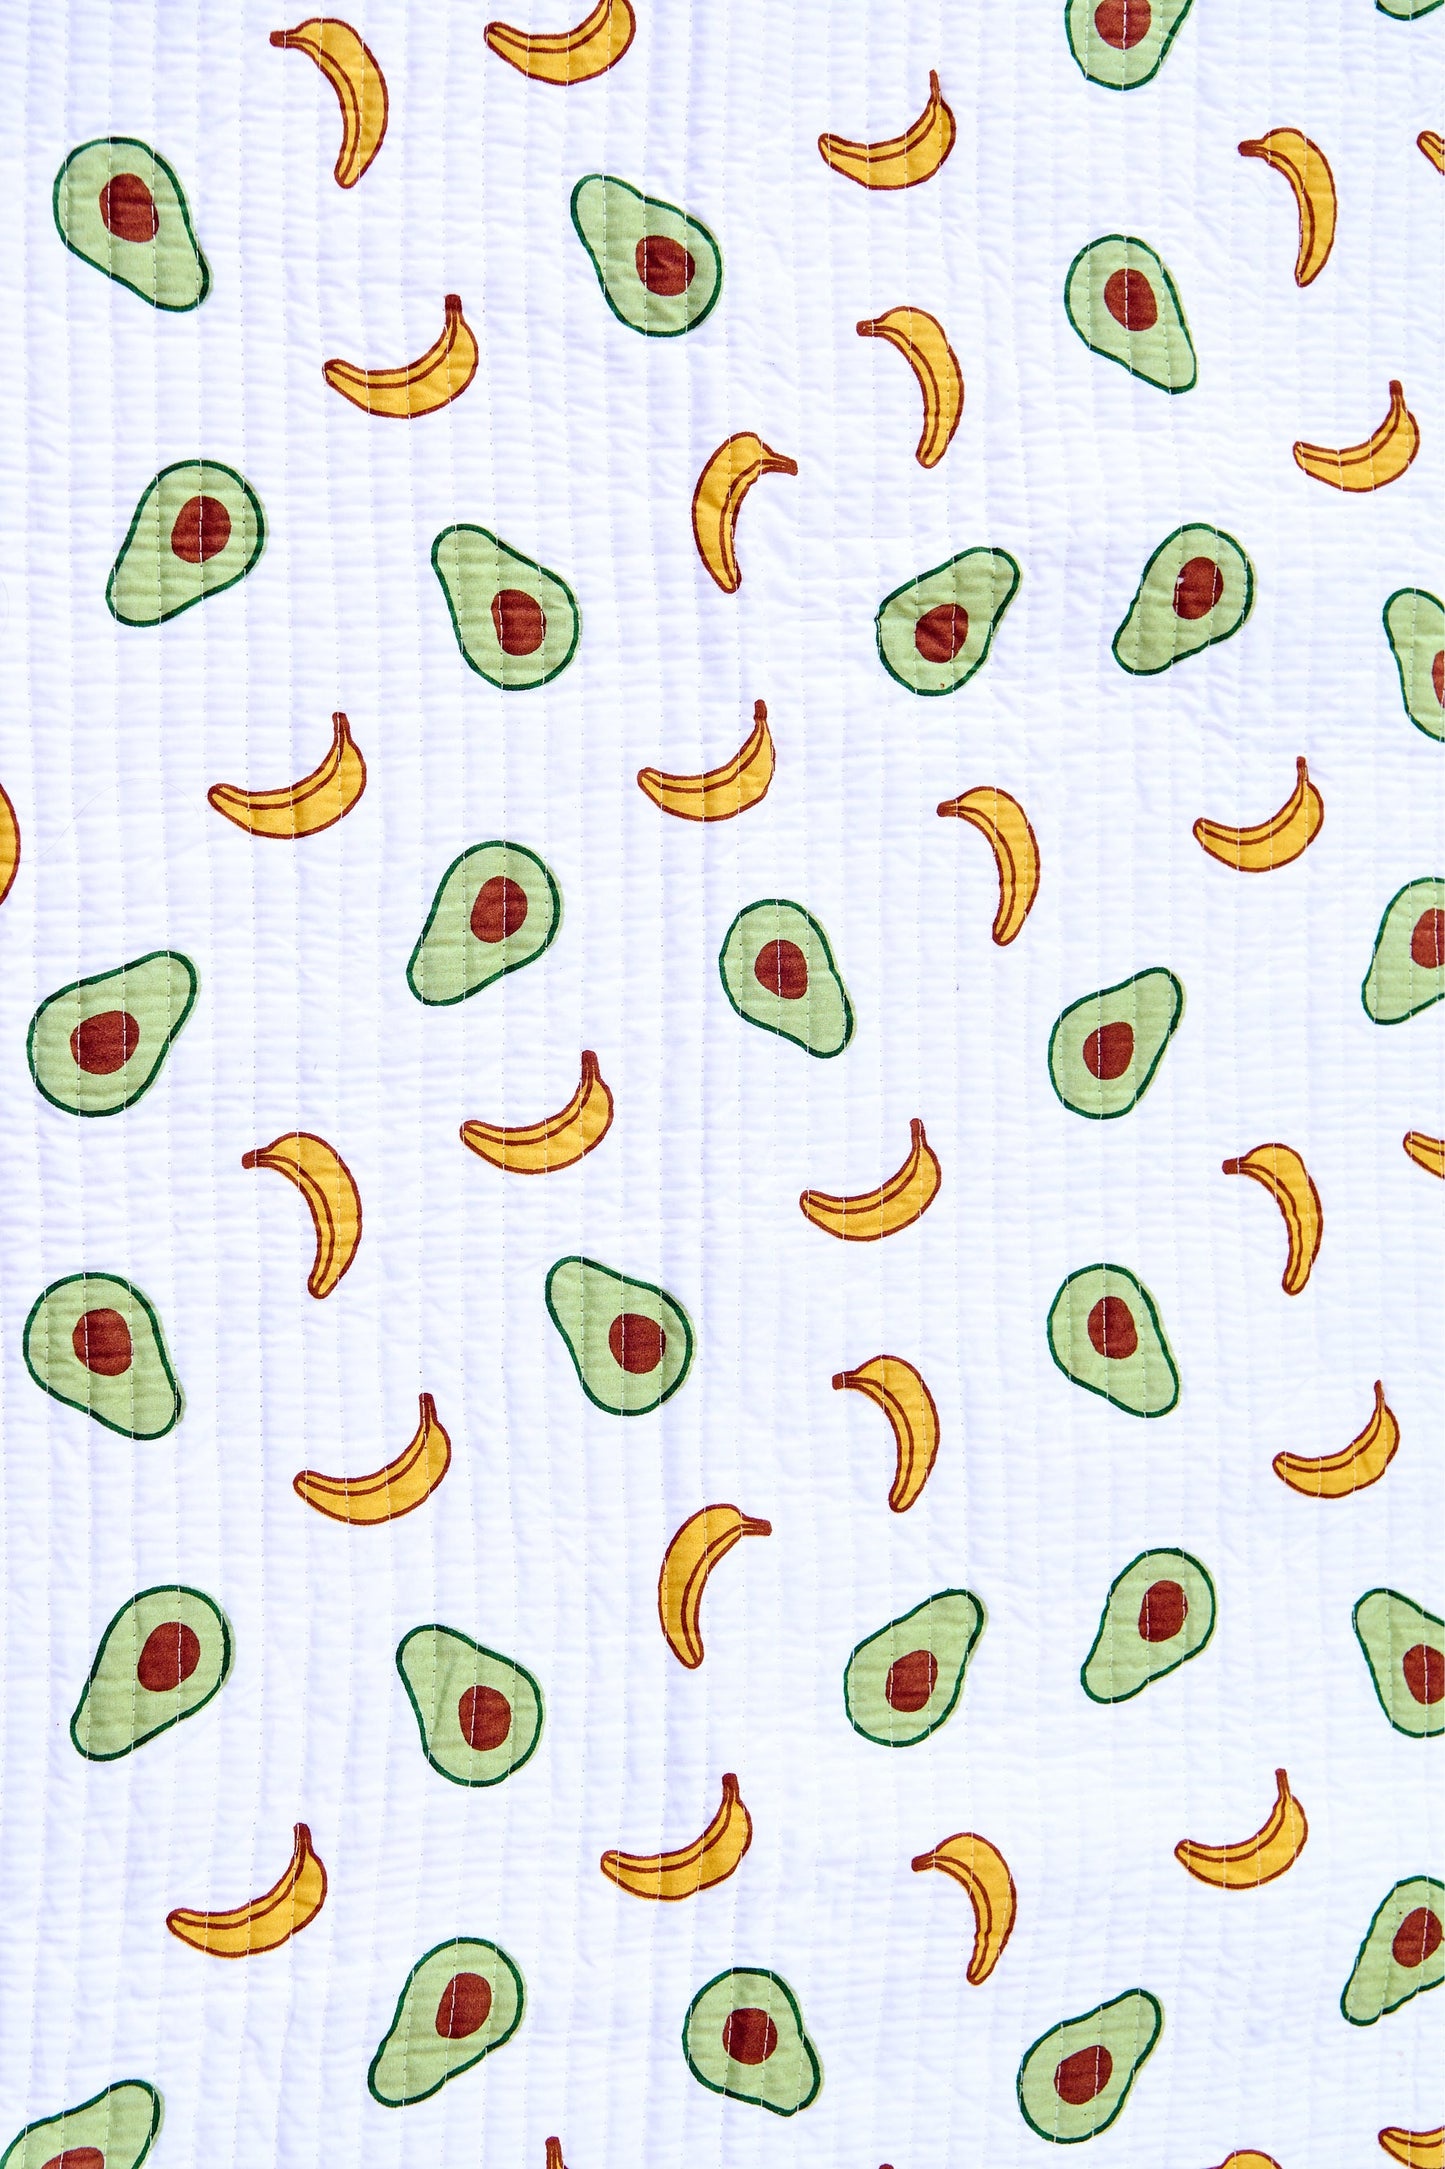 Reversible Muslin Baby Play Mat in Avocado and Banana Print